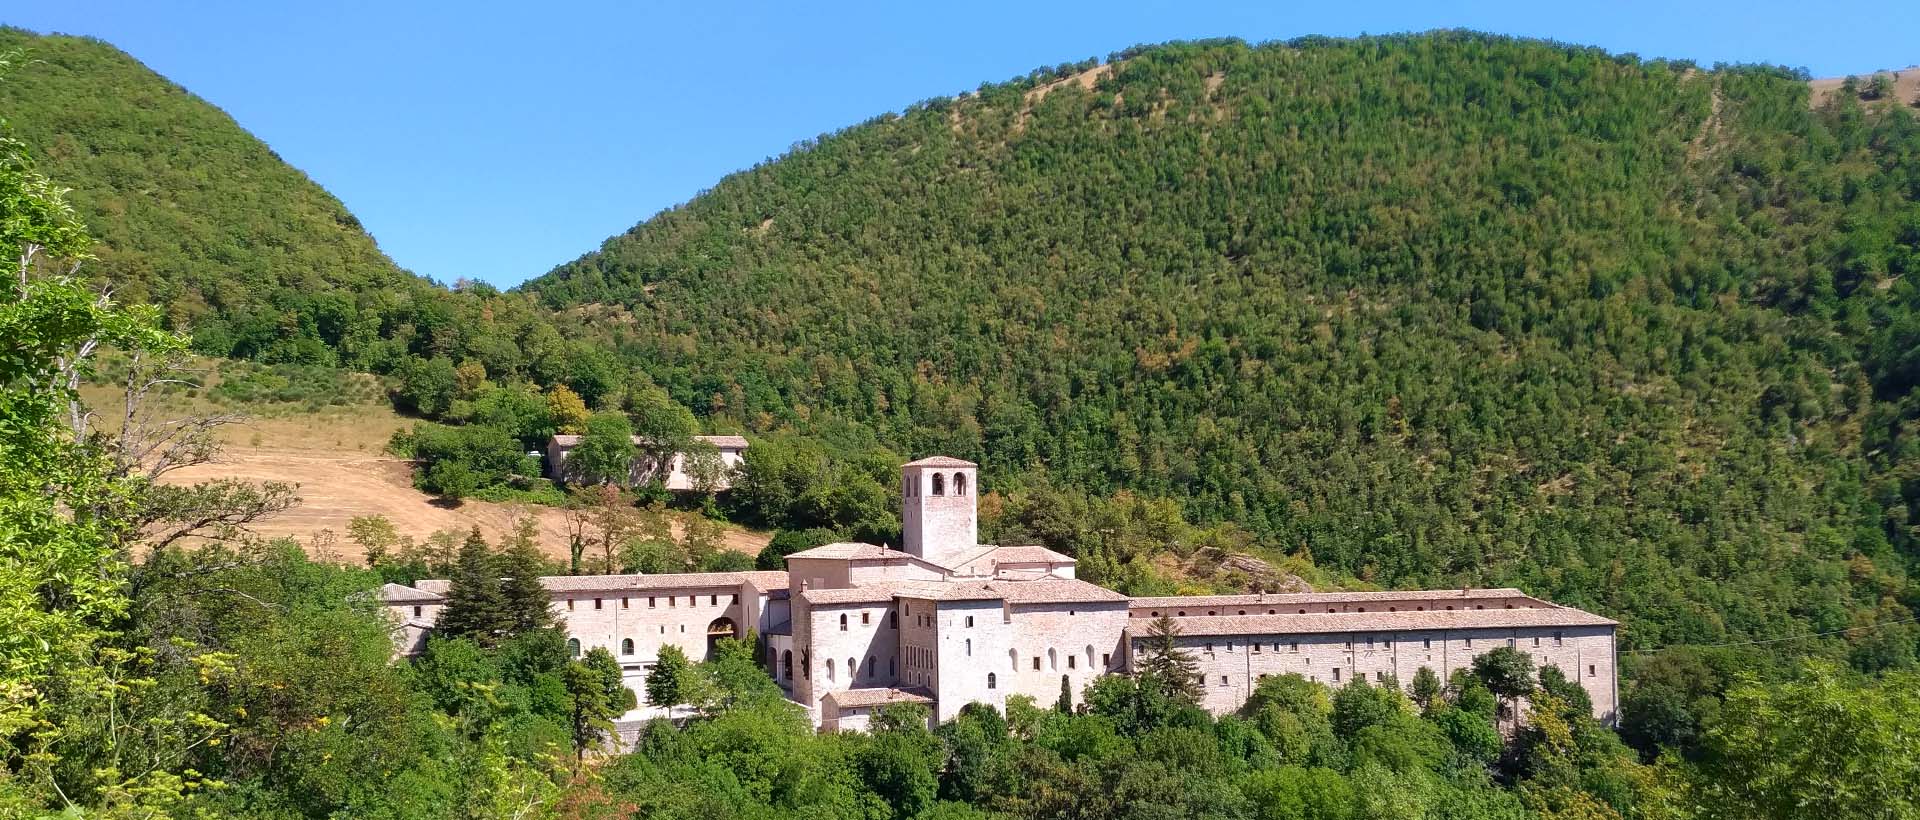 Prodotti del monastero Camaldolese di Fonte Avellana